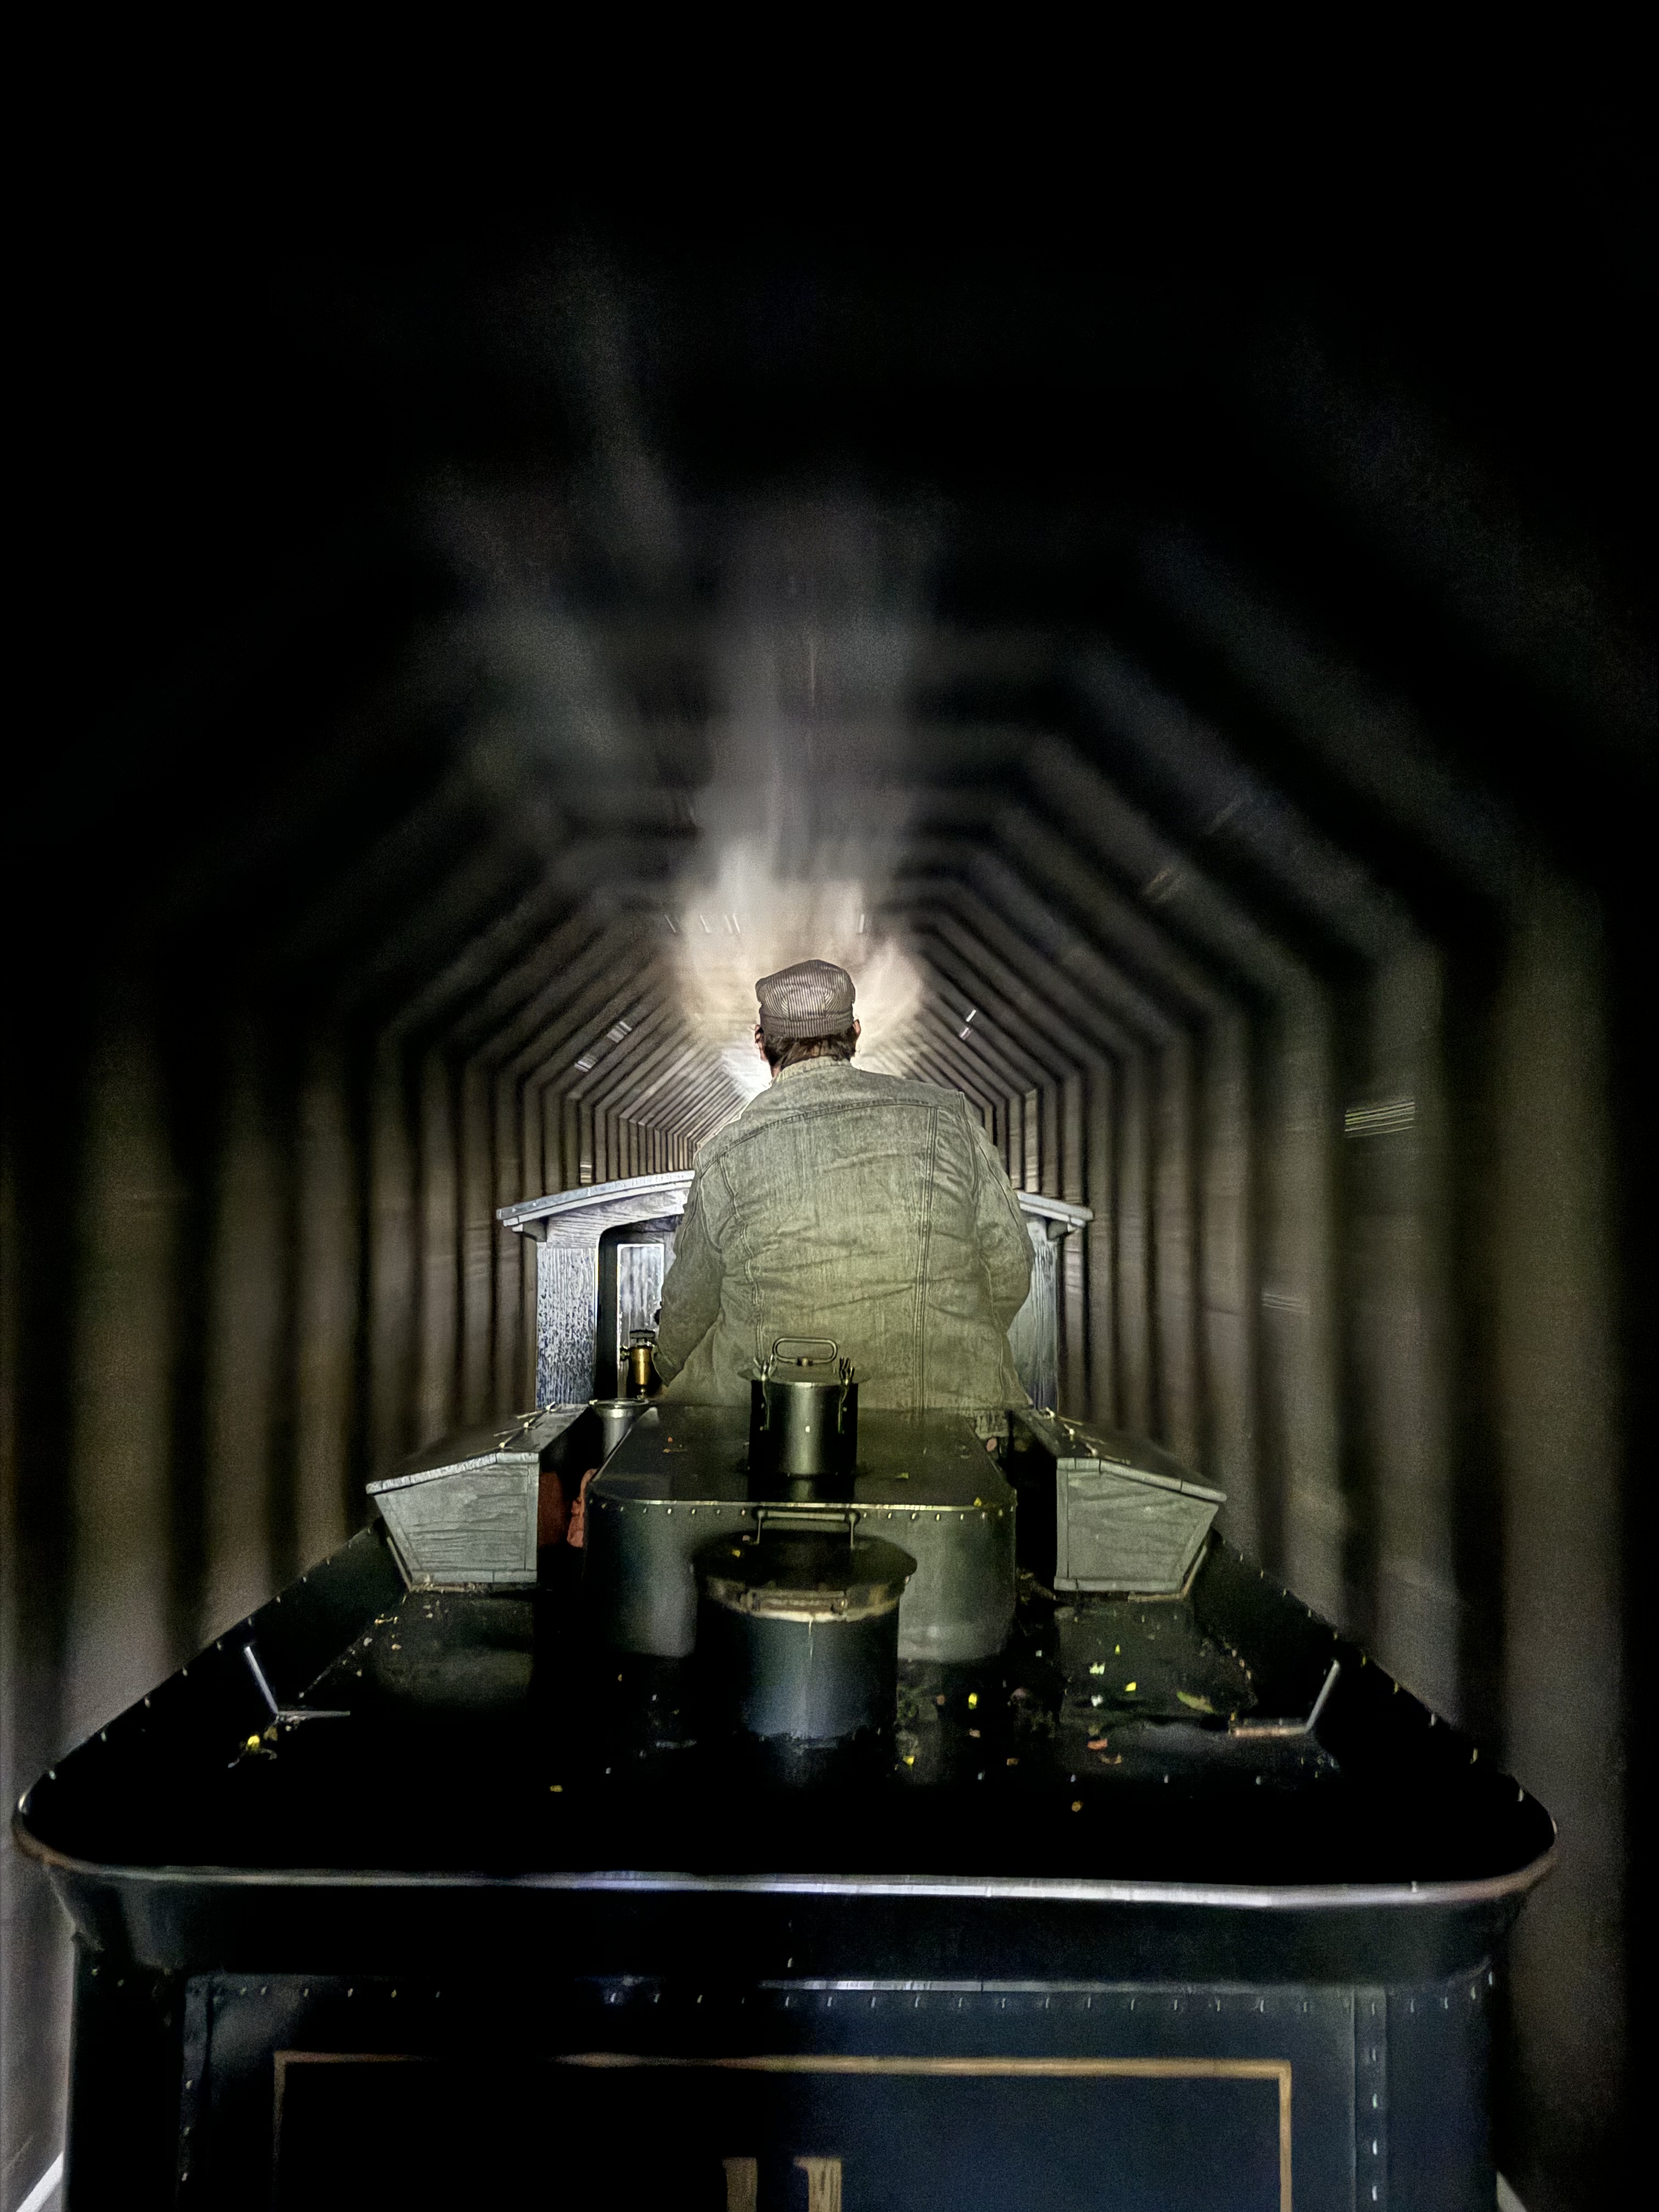 A man operating a miniature steam train through a tunnel.